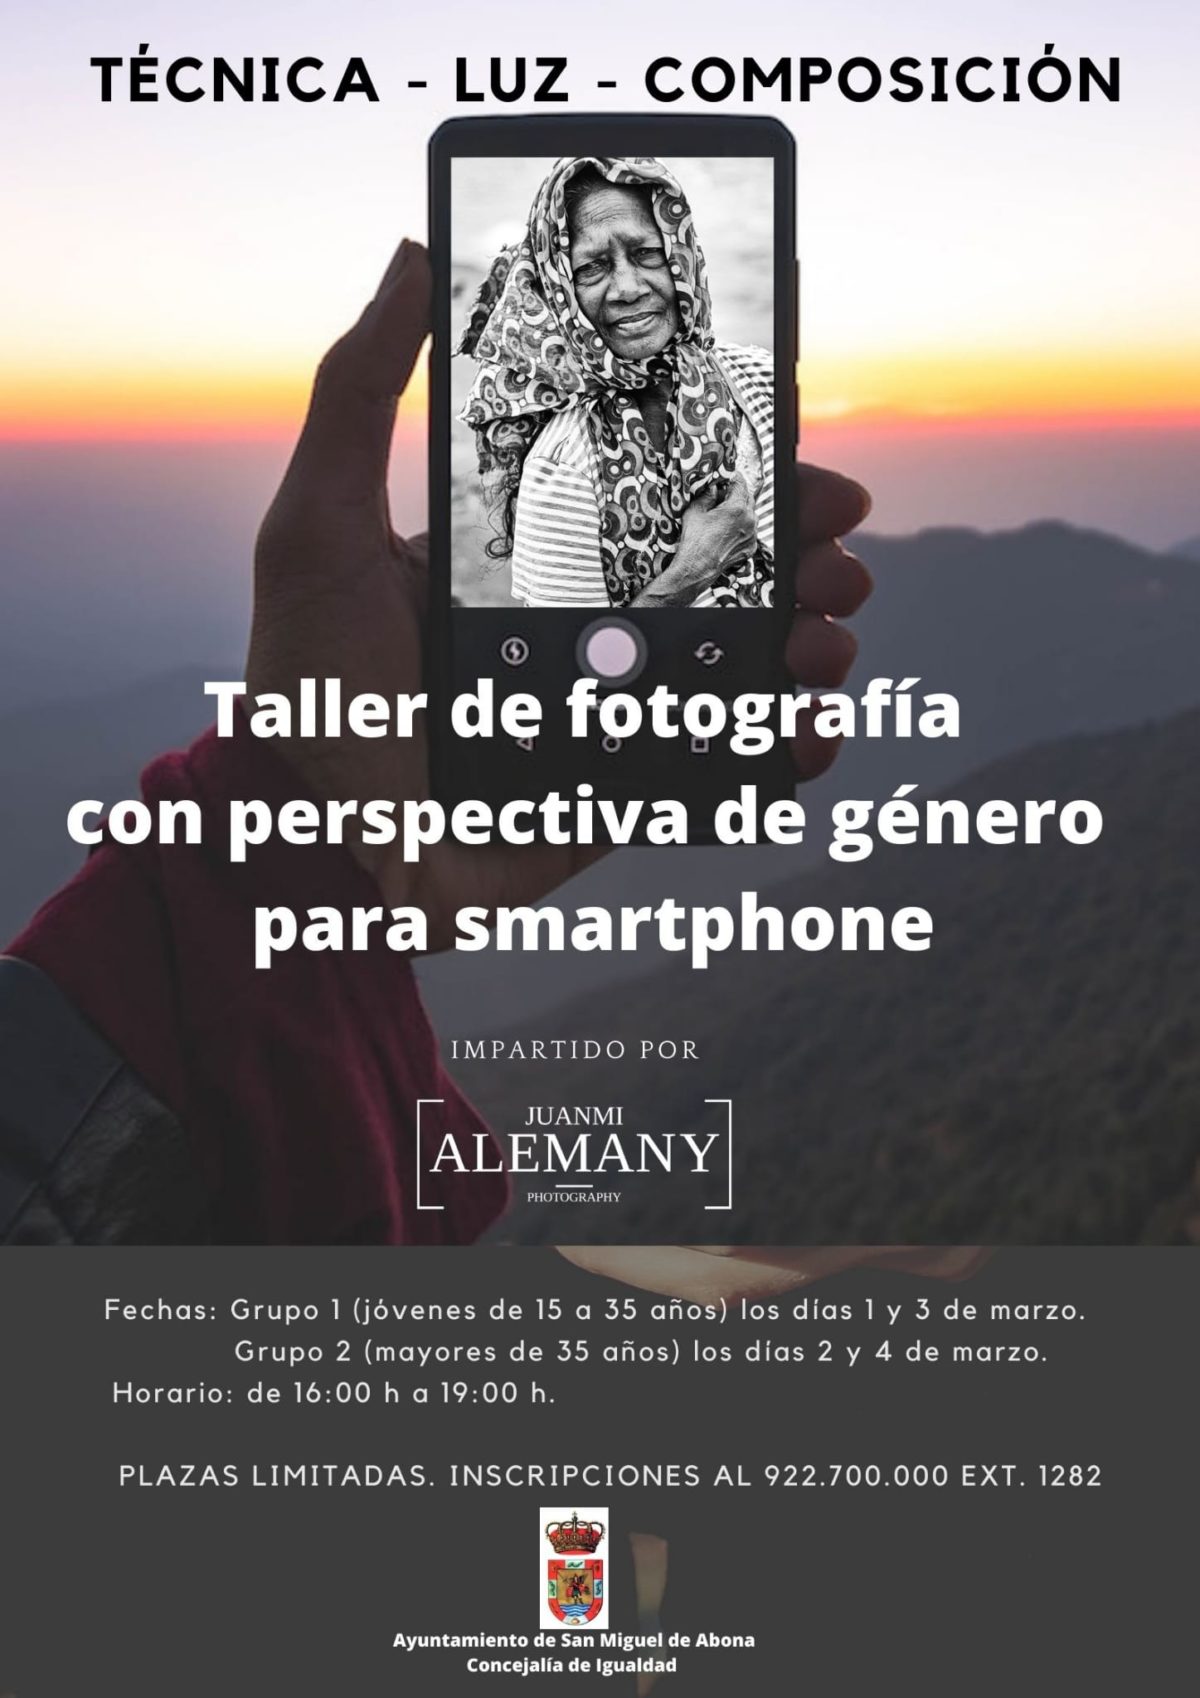 Taller de fotografía para smartphone con perspectiva de género